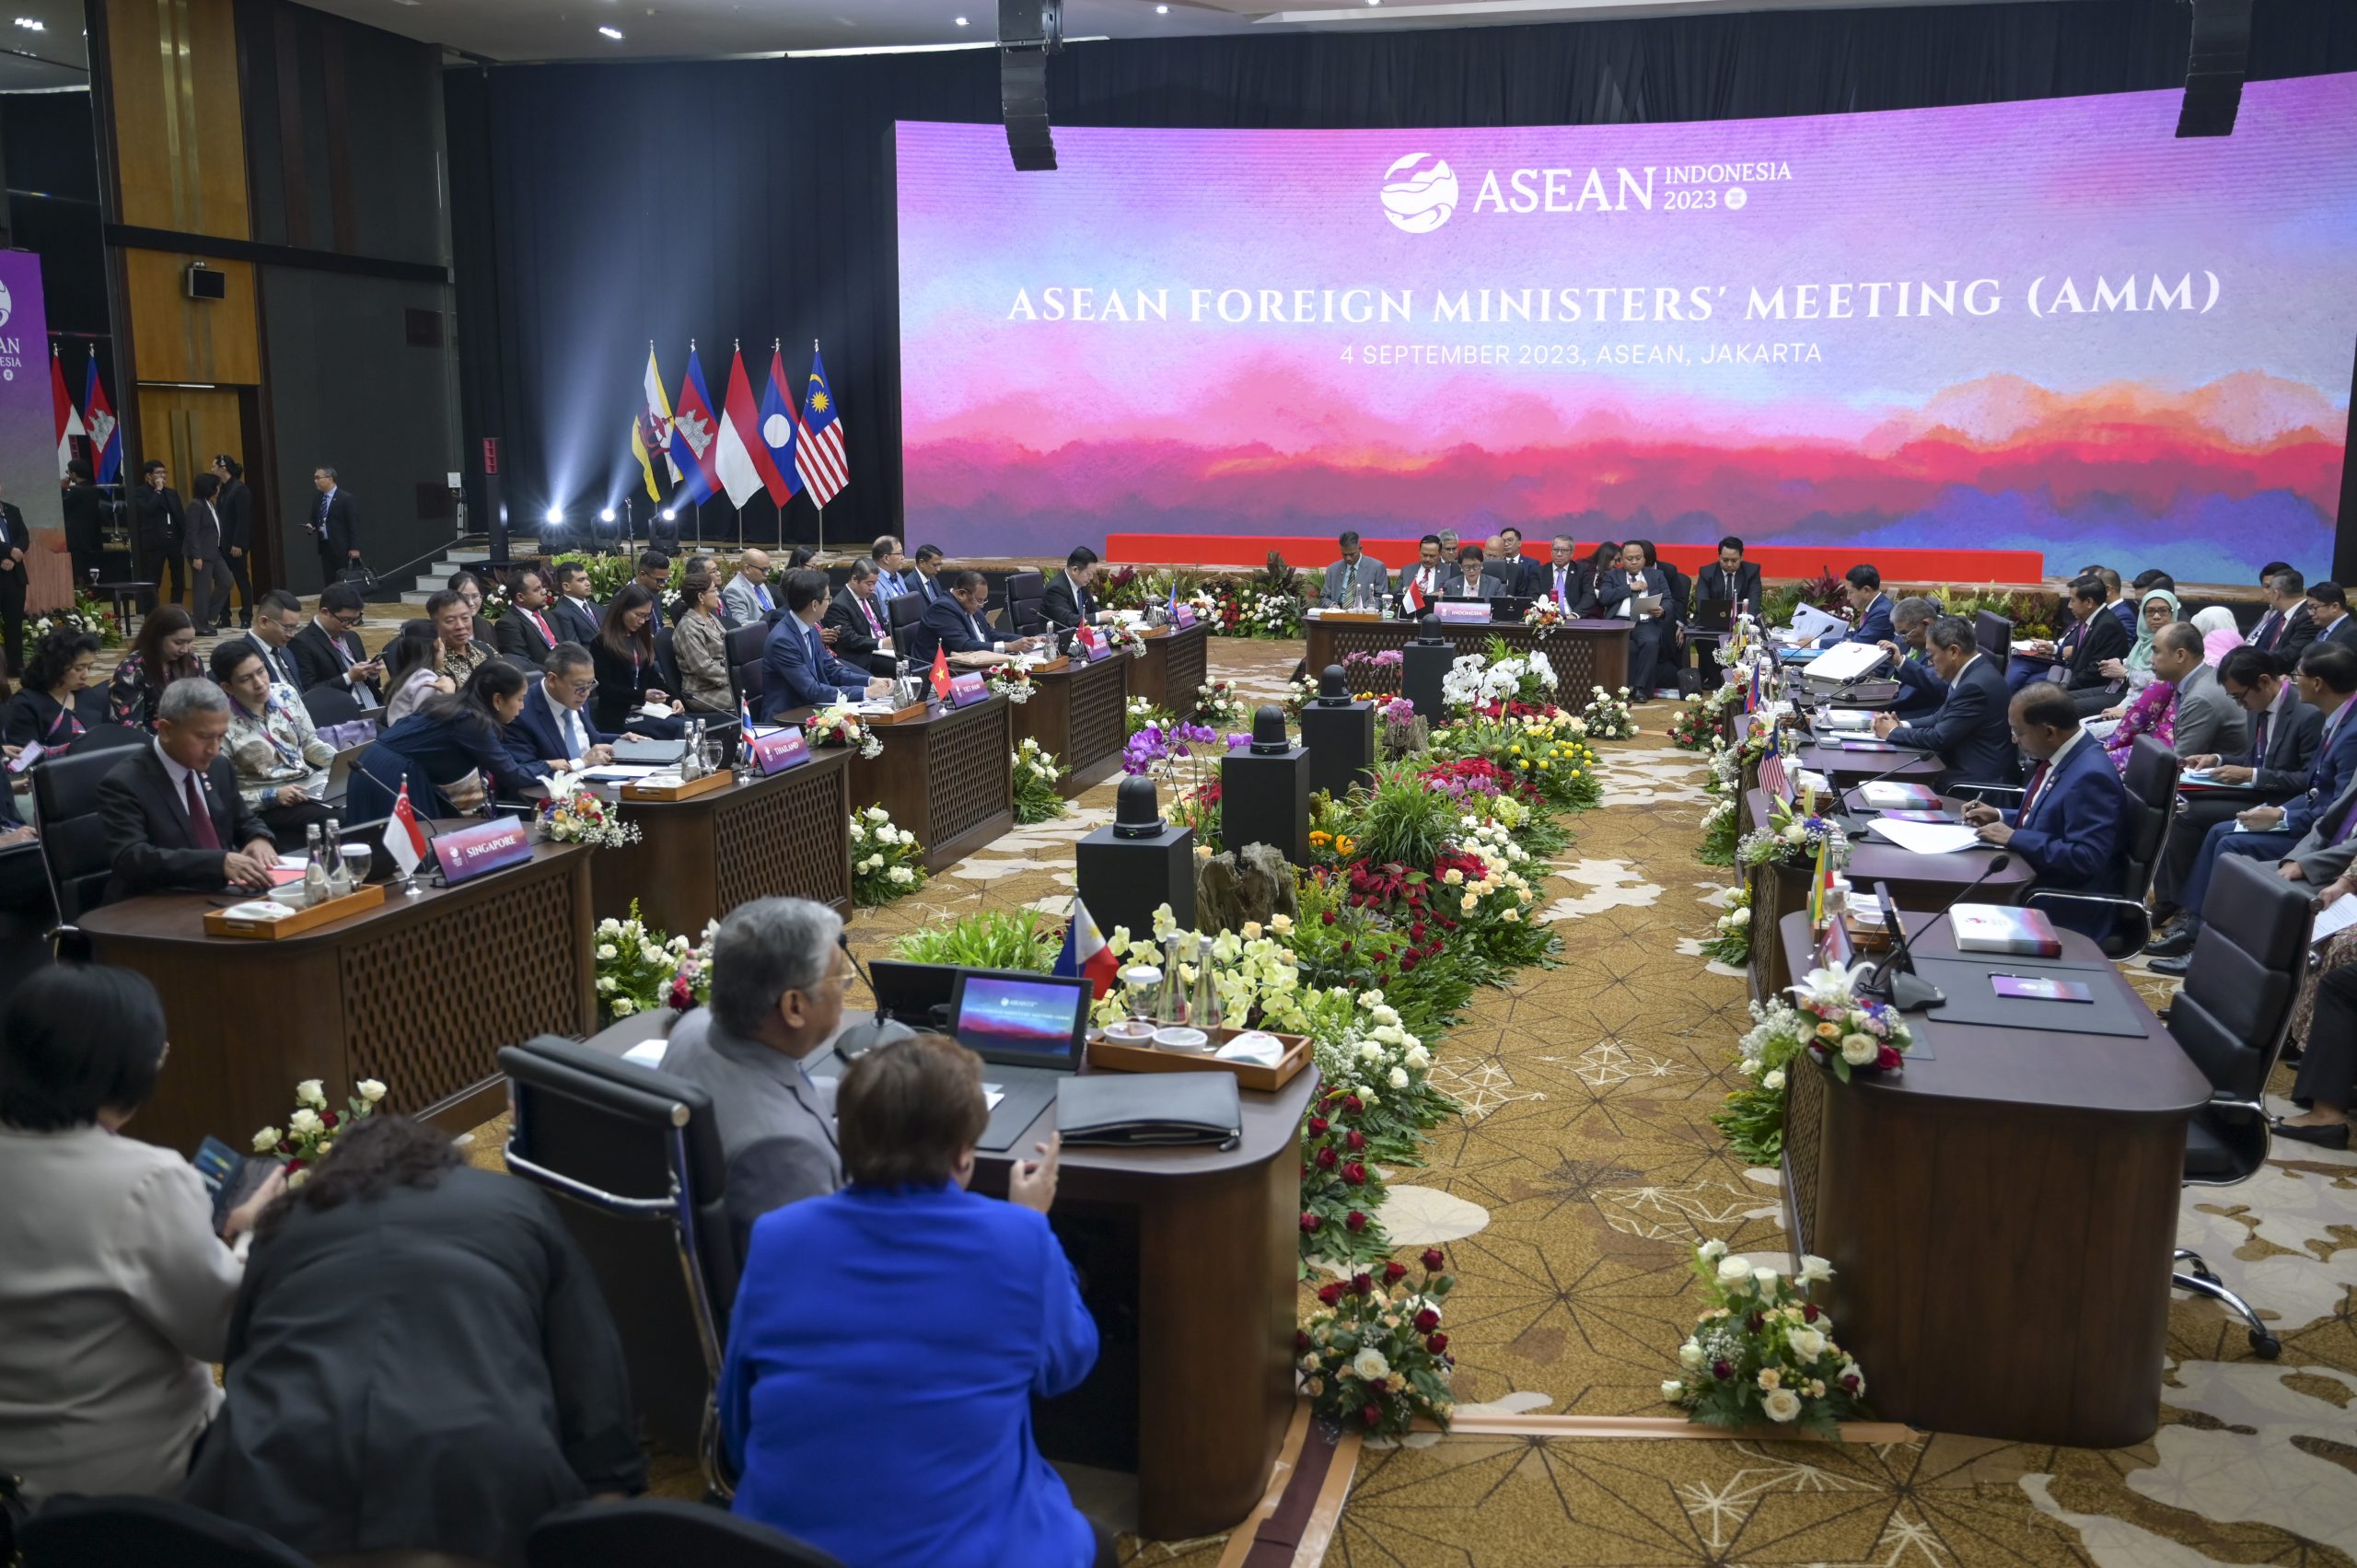 Srbija potpisala Ugovor o prijateljstvu i saradnji sa zemljama Jugoistočne Azije